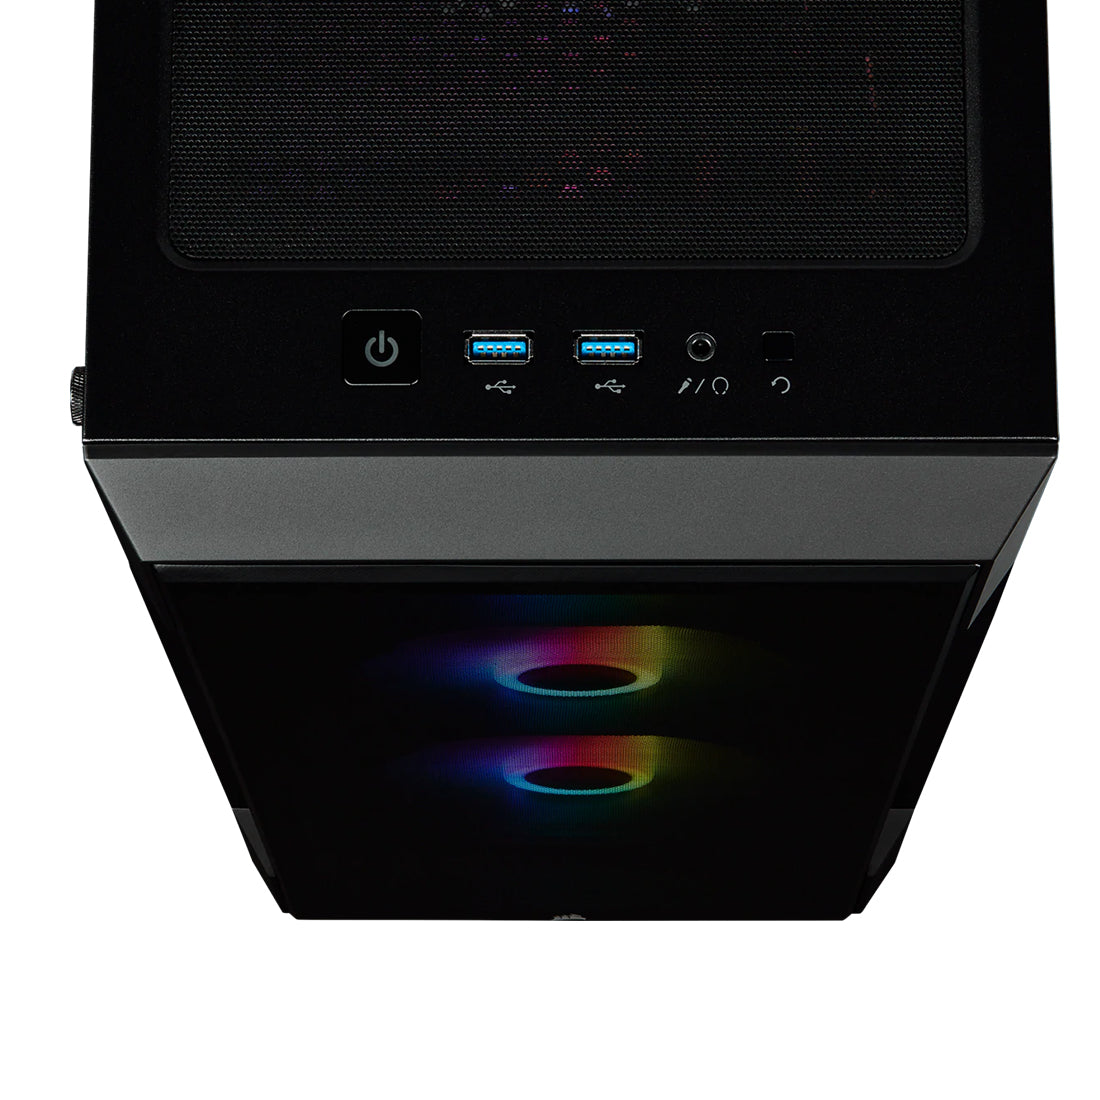 CORSAIR iCUE 220T RGB मिड टॉवर ATX कैबिनेट तीन SP120 RGB प्रो फैन और टेम्पर्ड ग्लास साइड पैनल के साथ